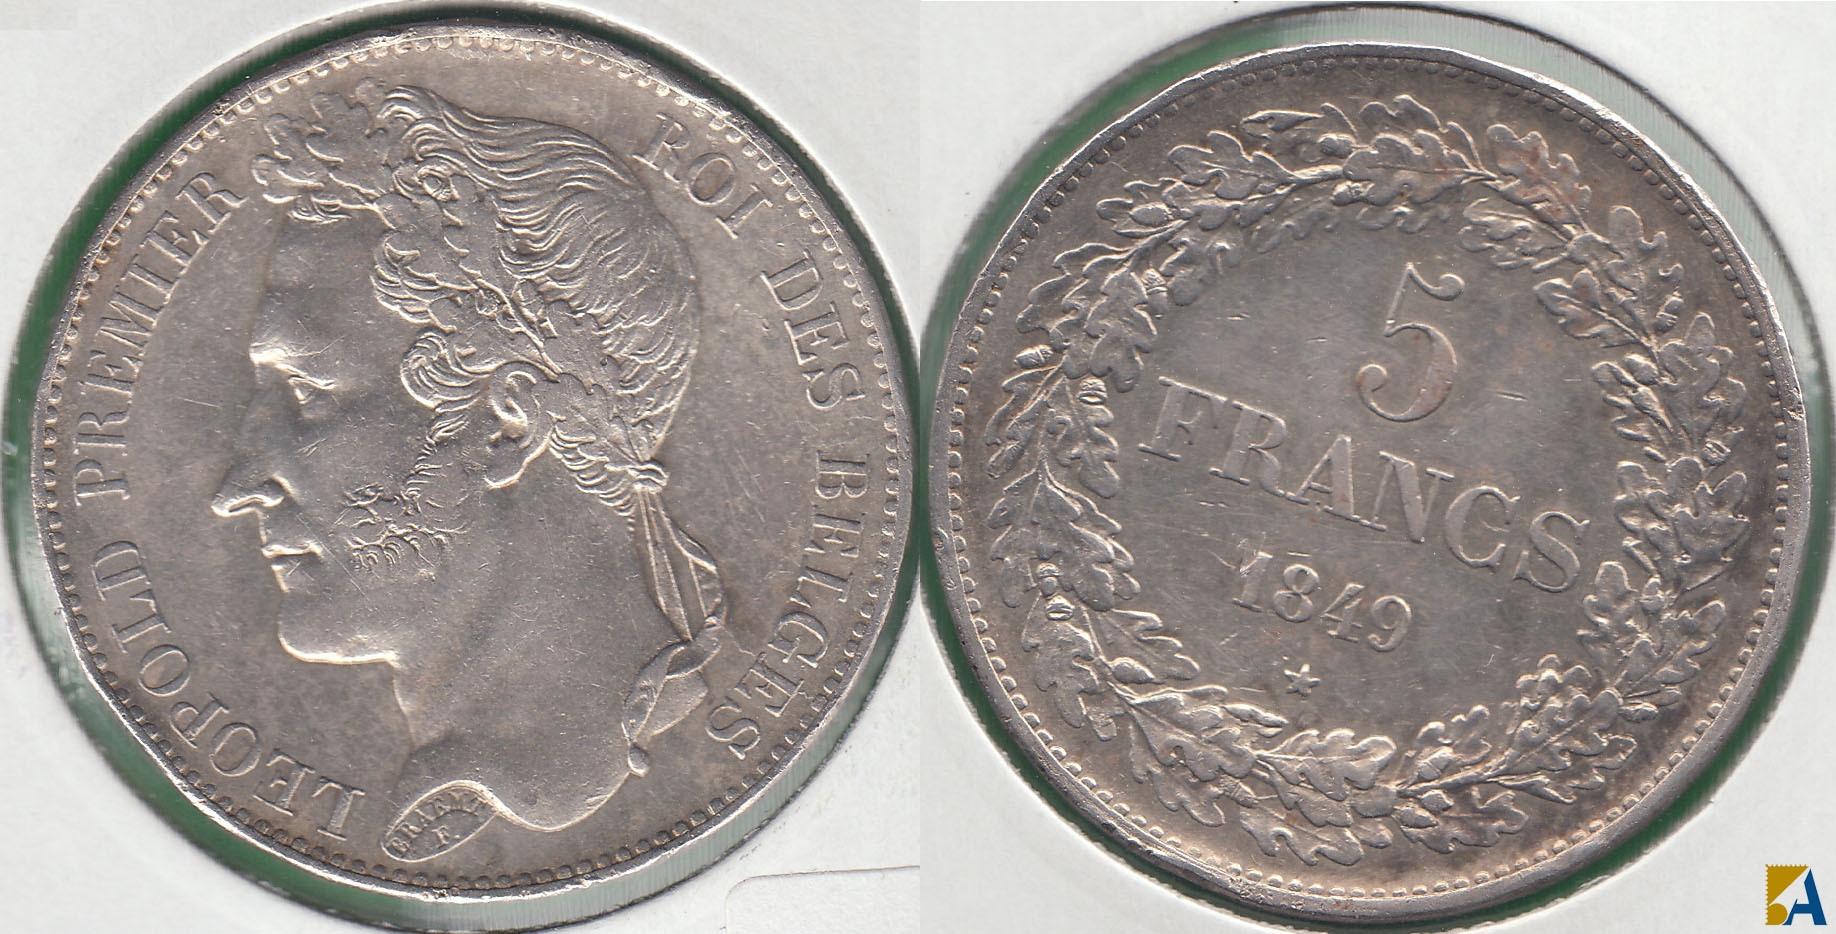 BELGICA - BELGIUM. 5 FRANCOS (FRANCS) DE 1849. PLATA 0.900.